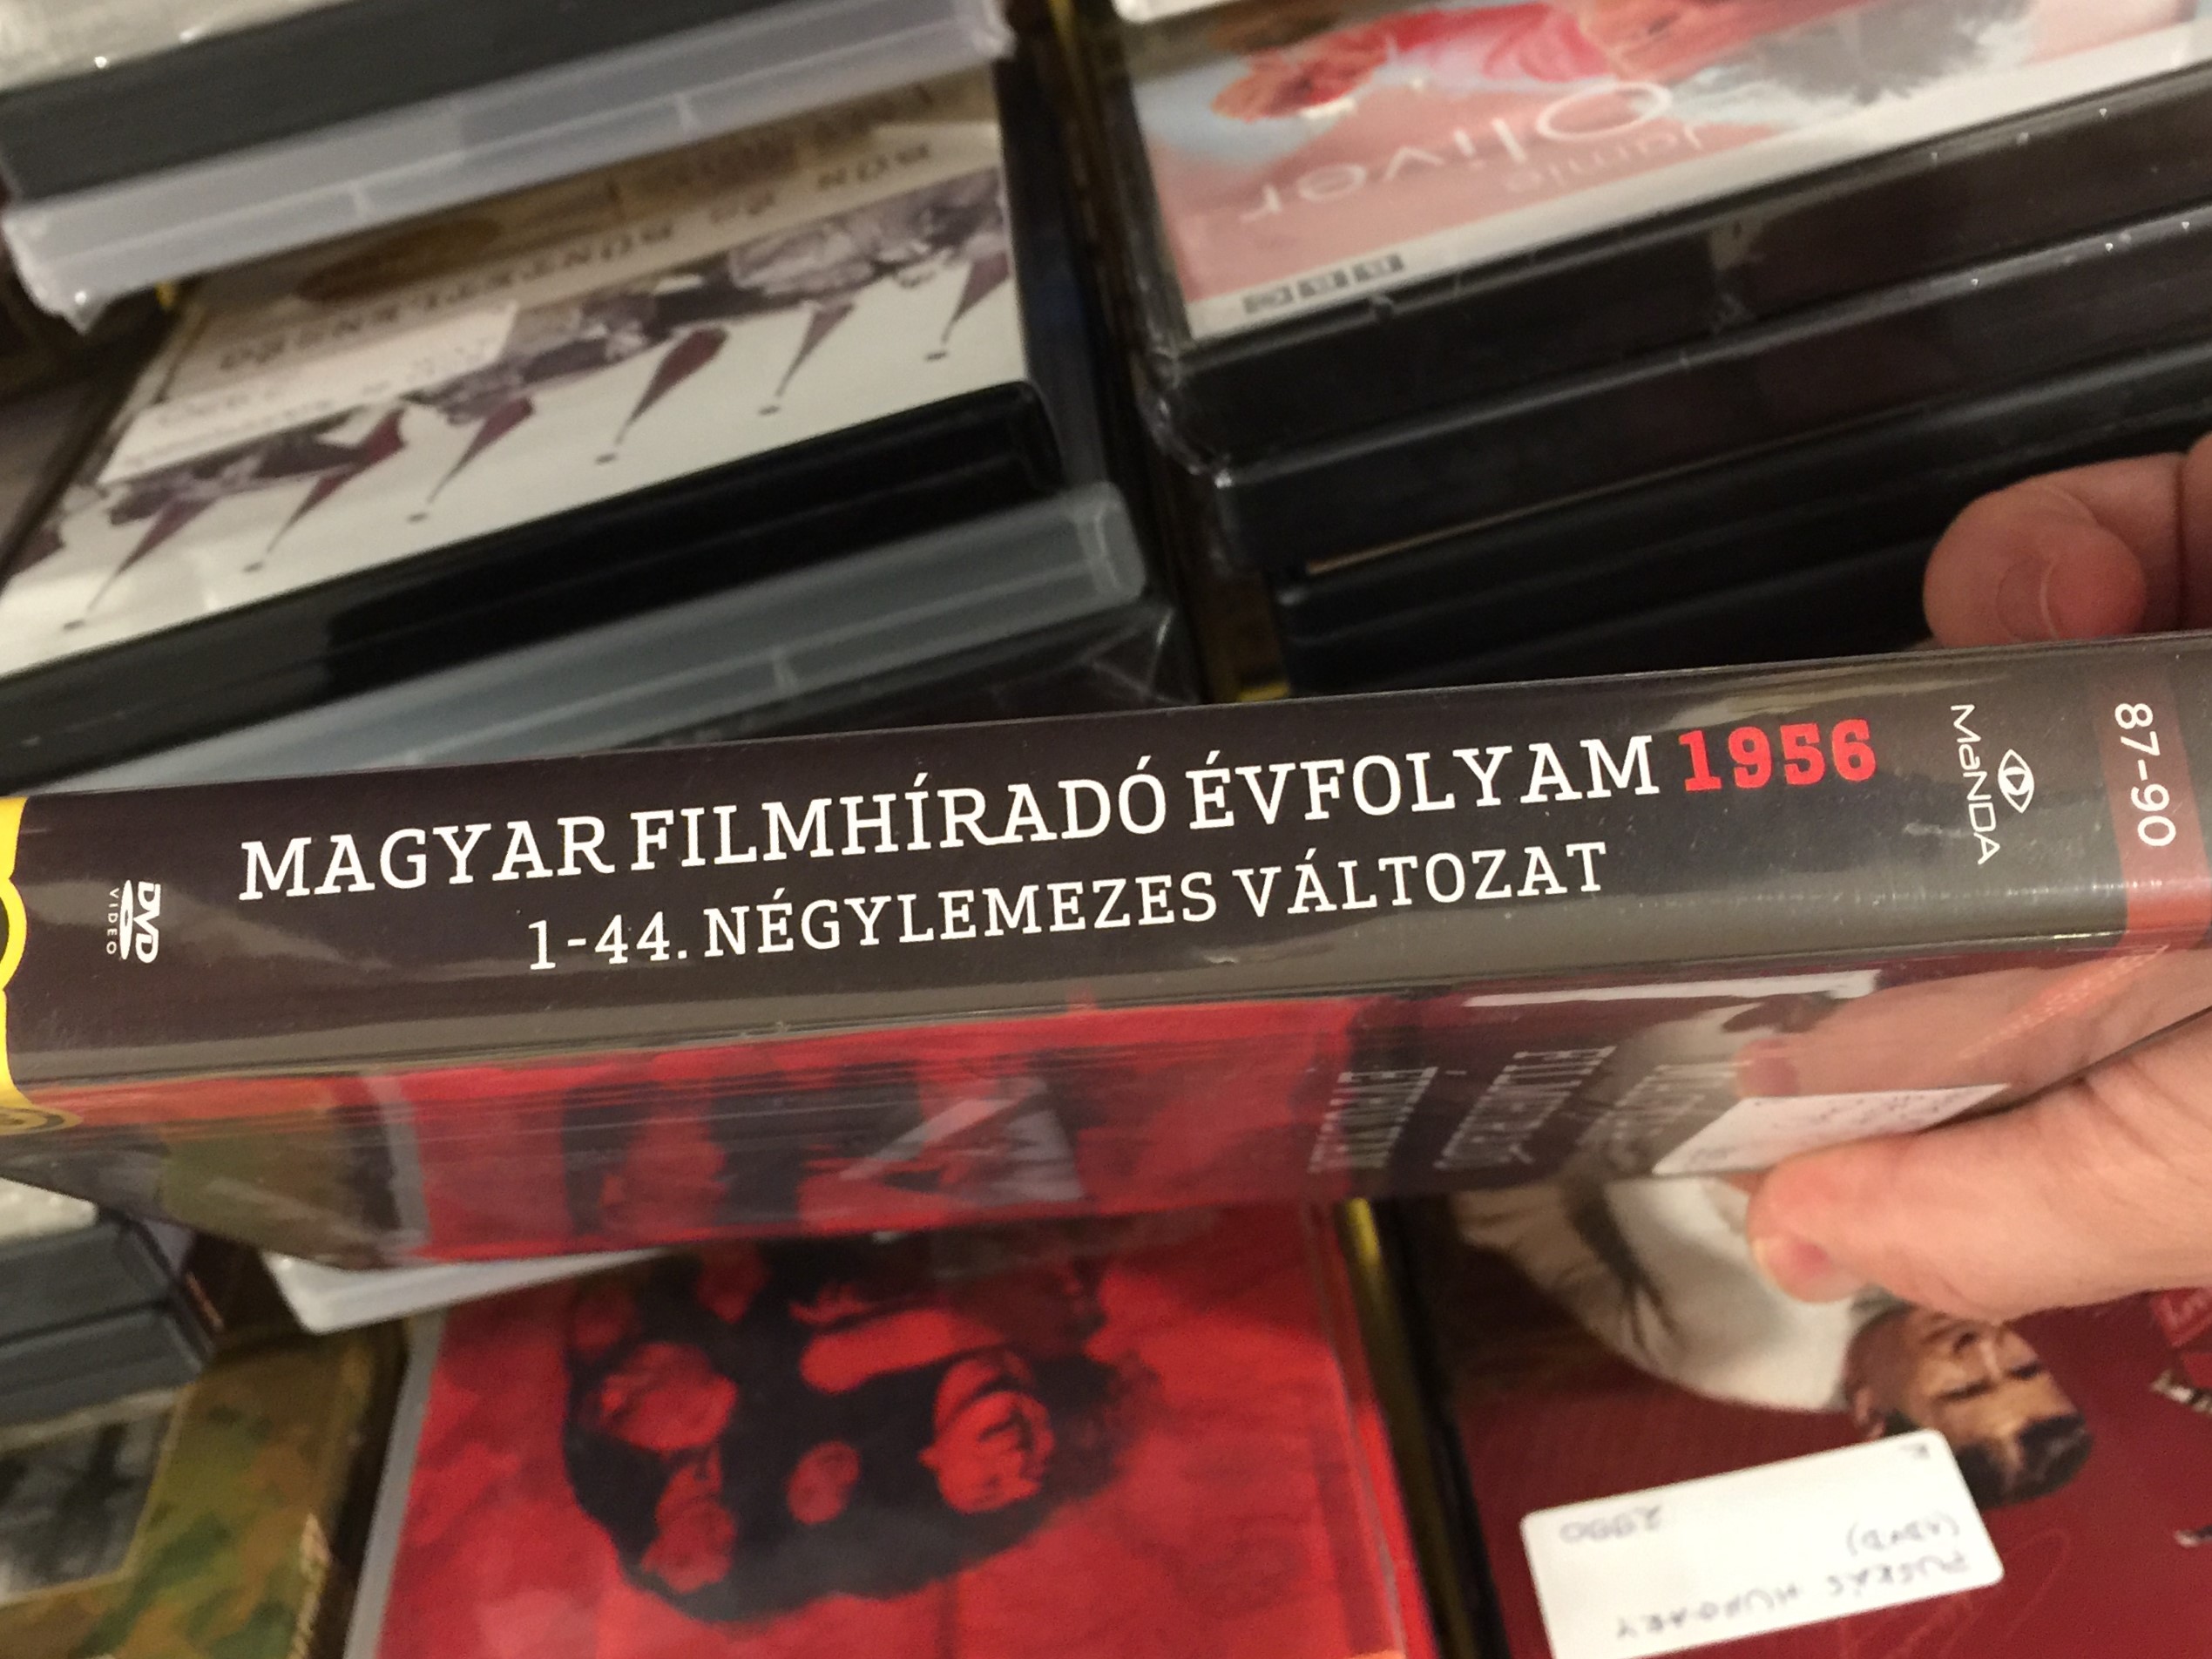 Magyar Filmíradó évfolyam - 1956 DVD Terror és forradalom 2.JPG